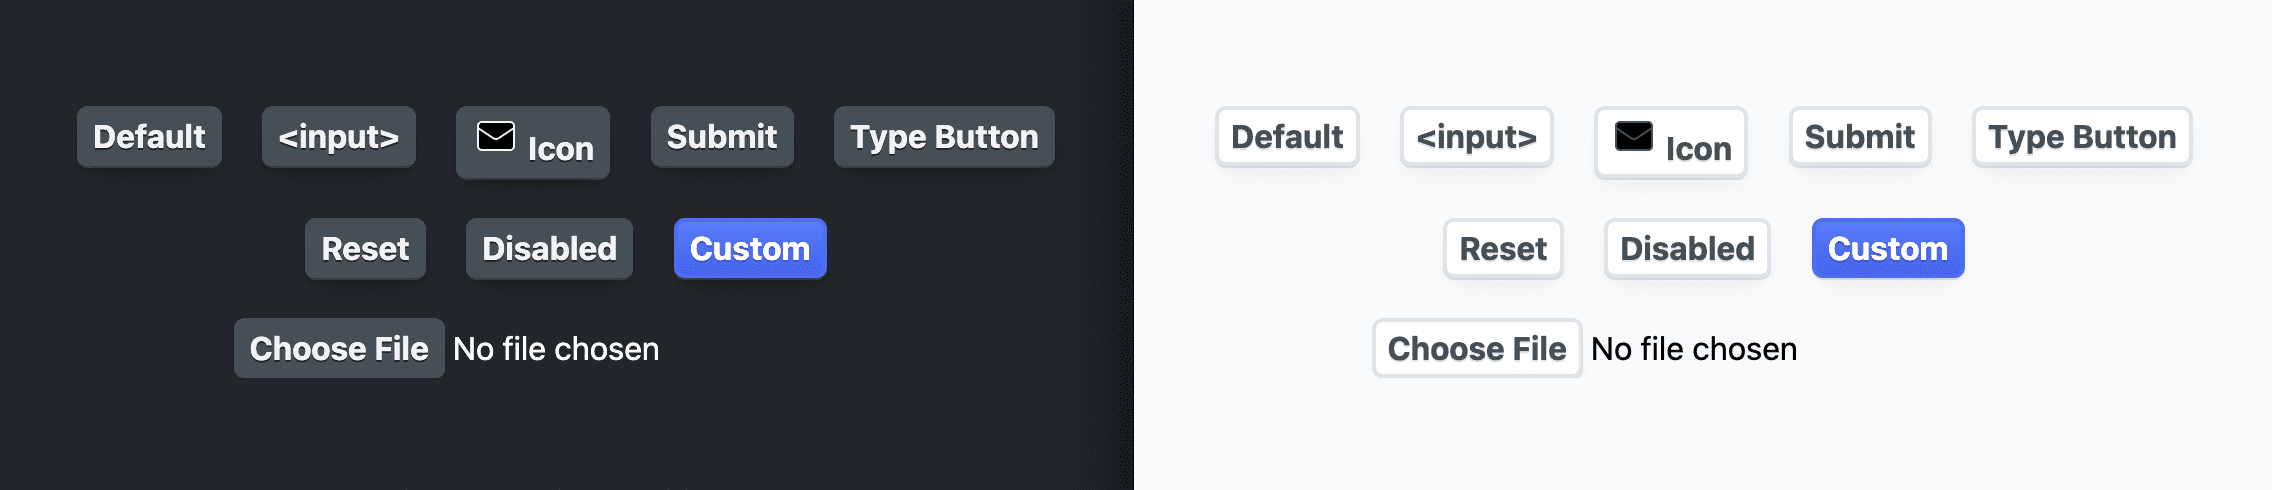 Captura de pantalla que muestra los botones después de aplicar los estilos anteriores.